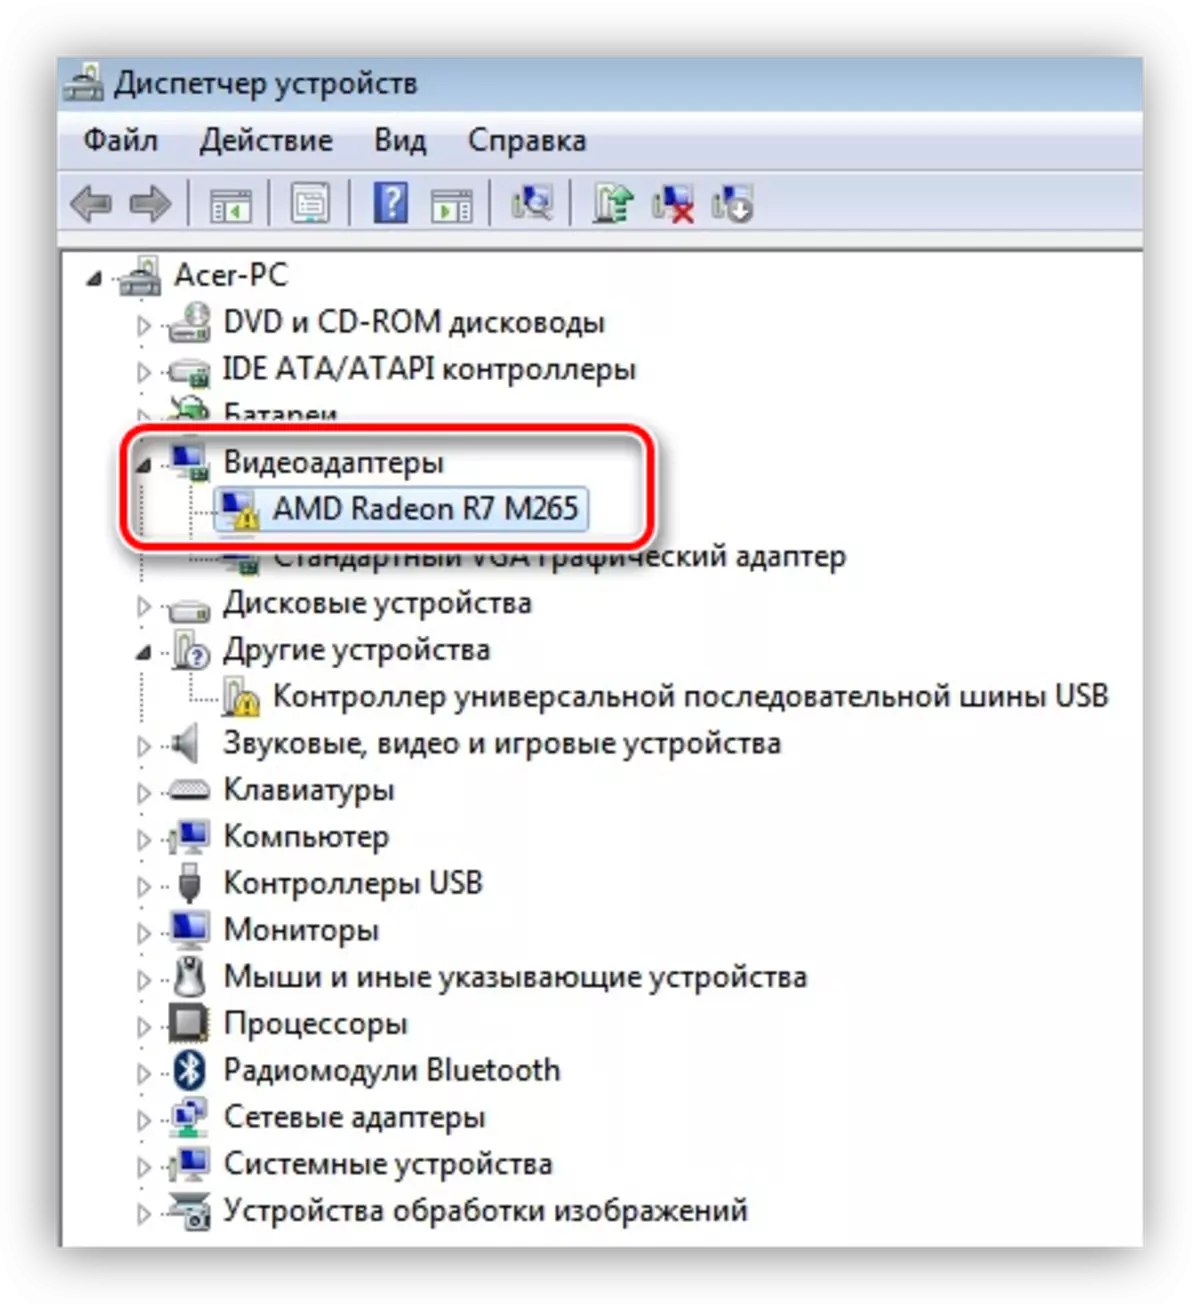 Fejlbaseret videokort angivet med et gult ikon i Windows Device Manager